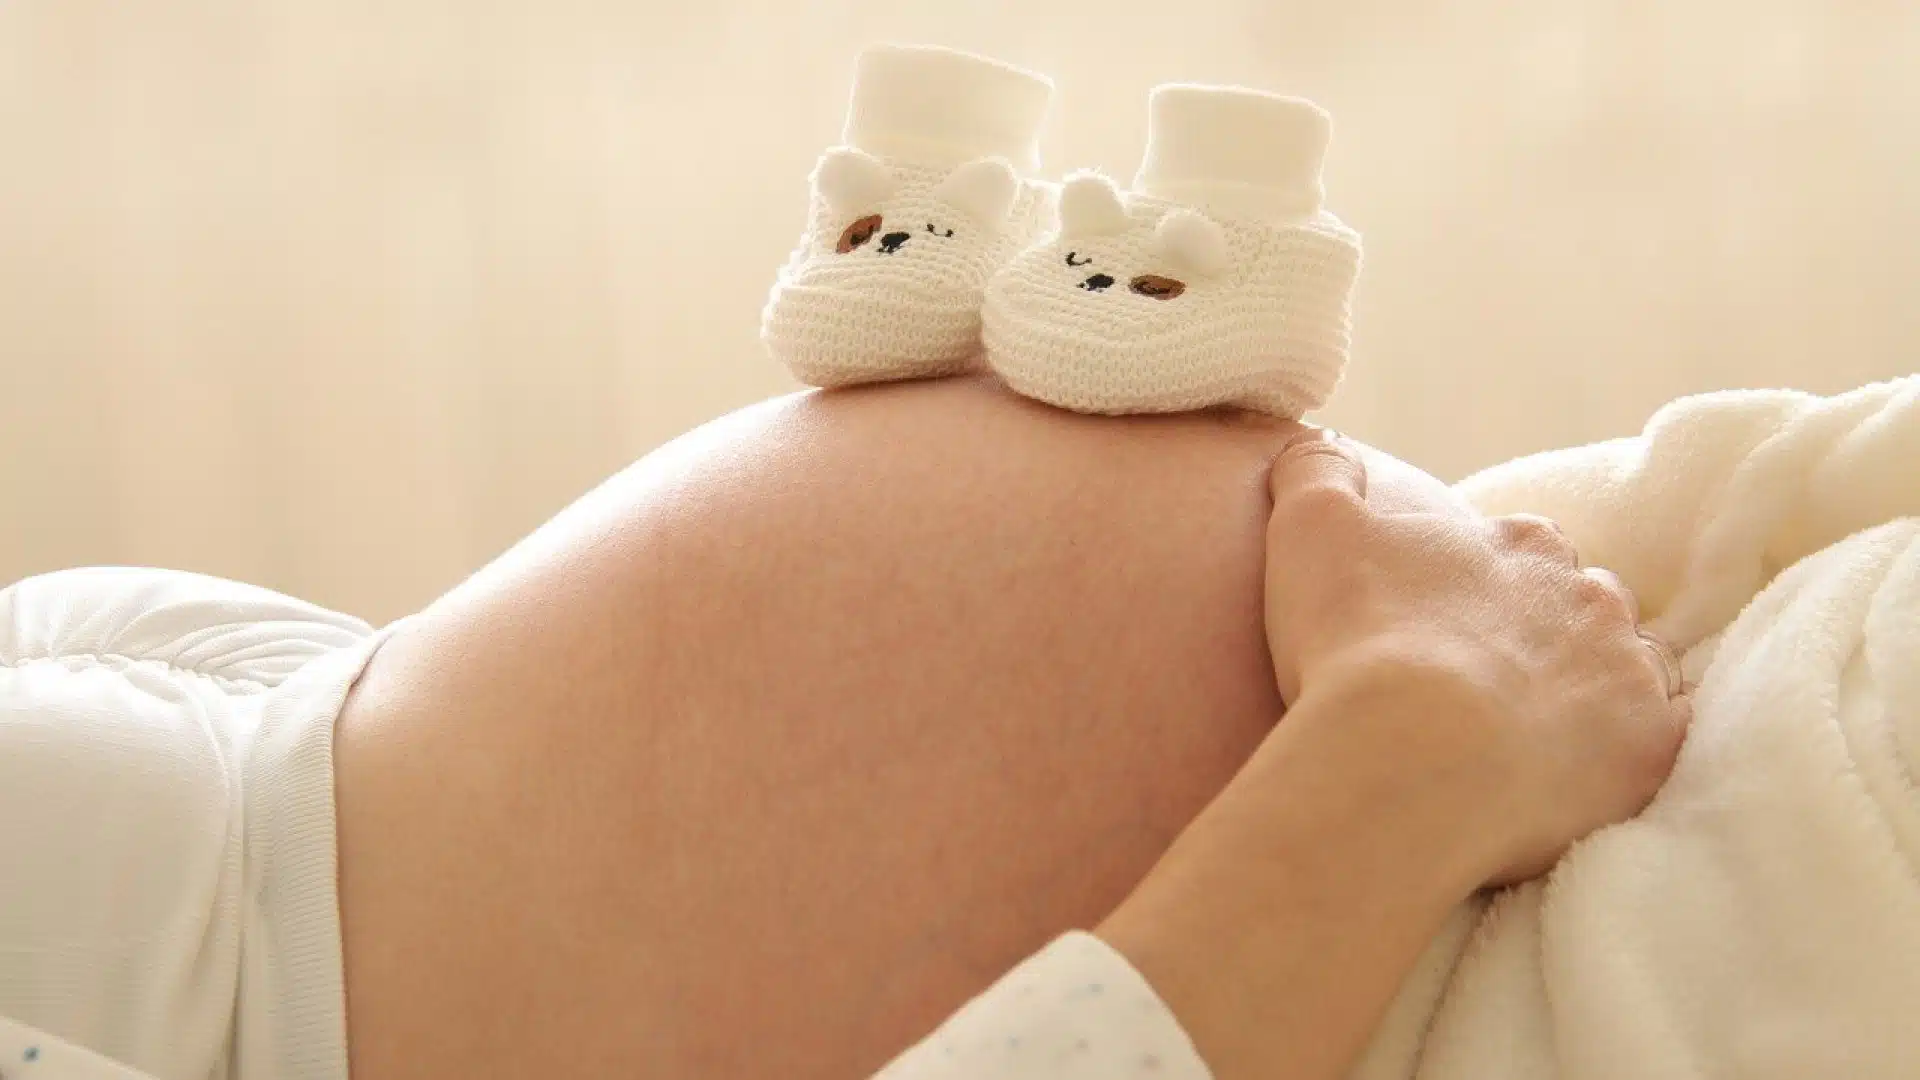 Explorer les atouts d'un blog dédié à la parentalité et la grossesse...